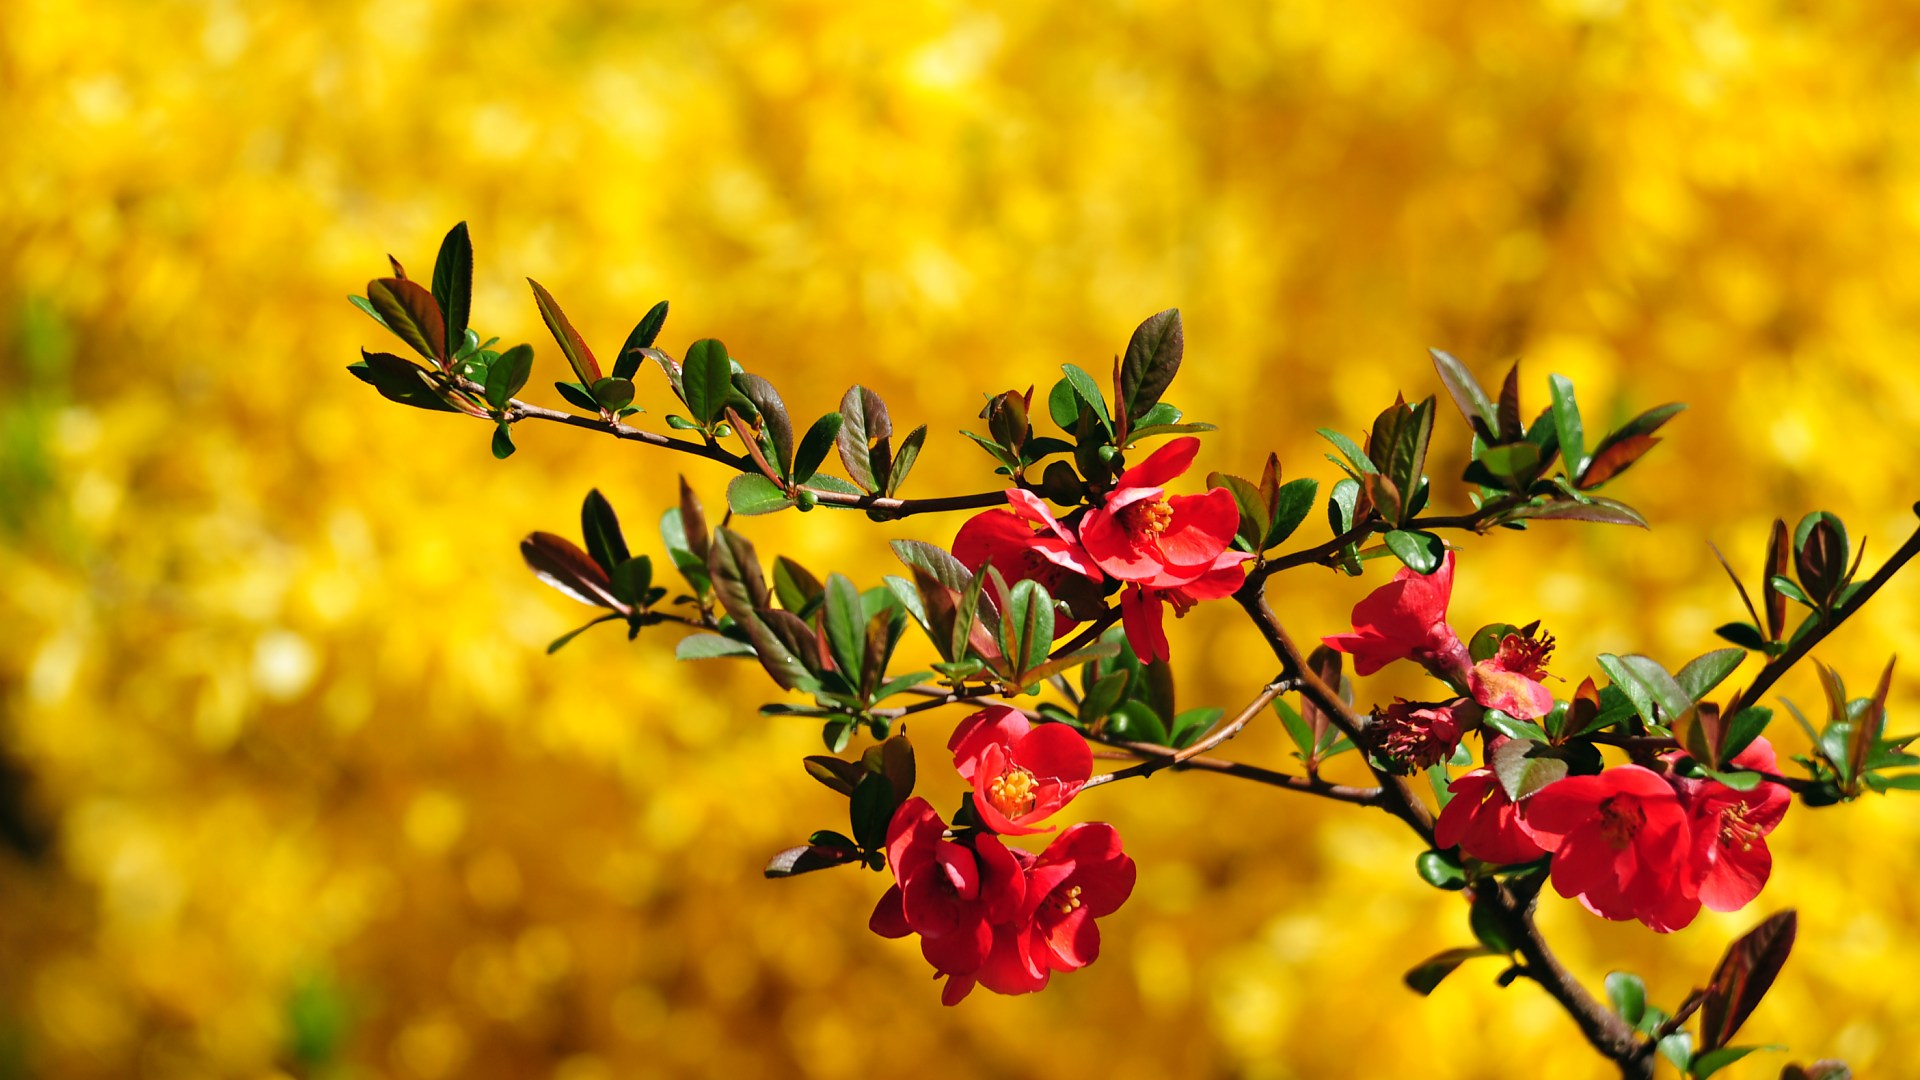 Циановые цветы бесплатно